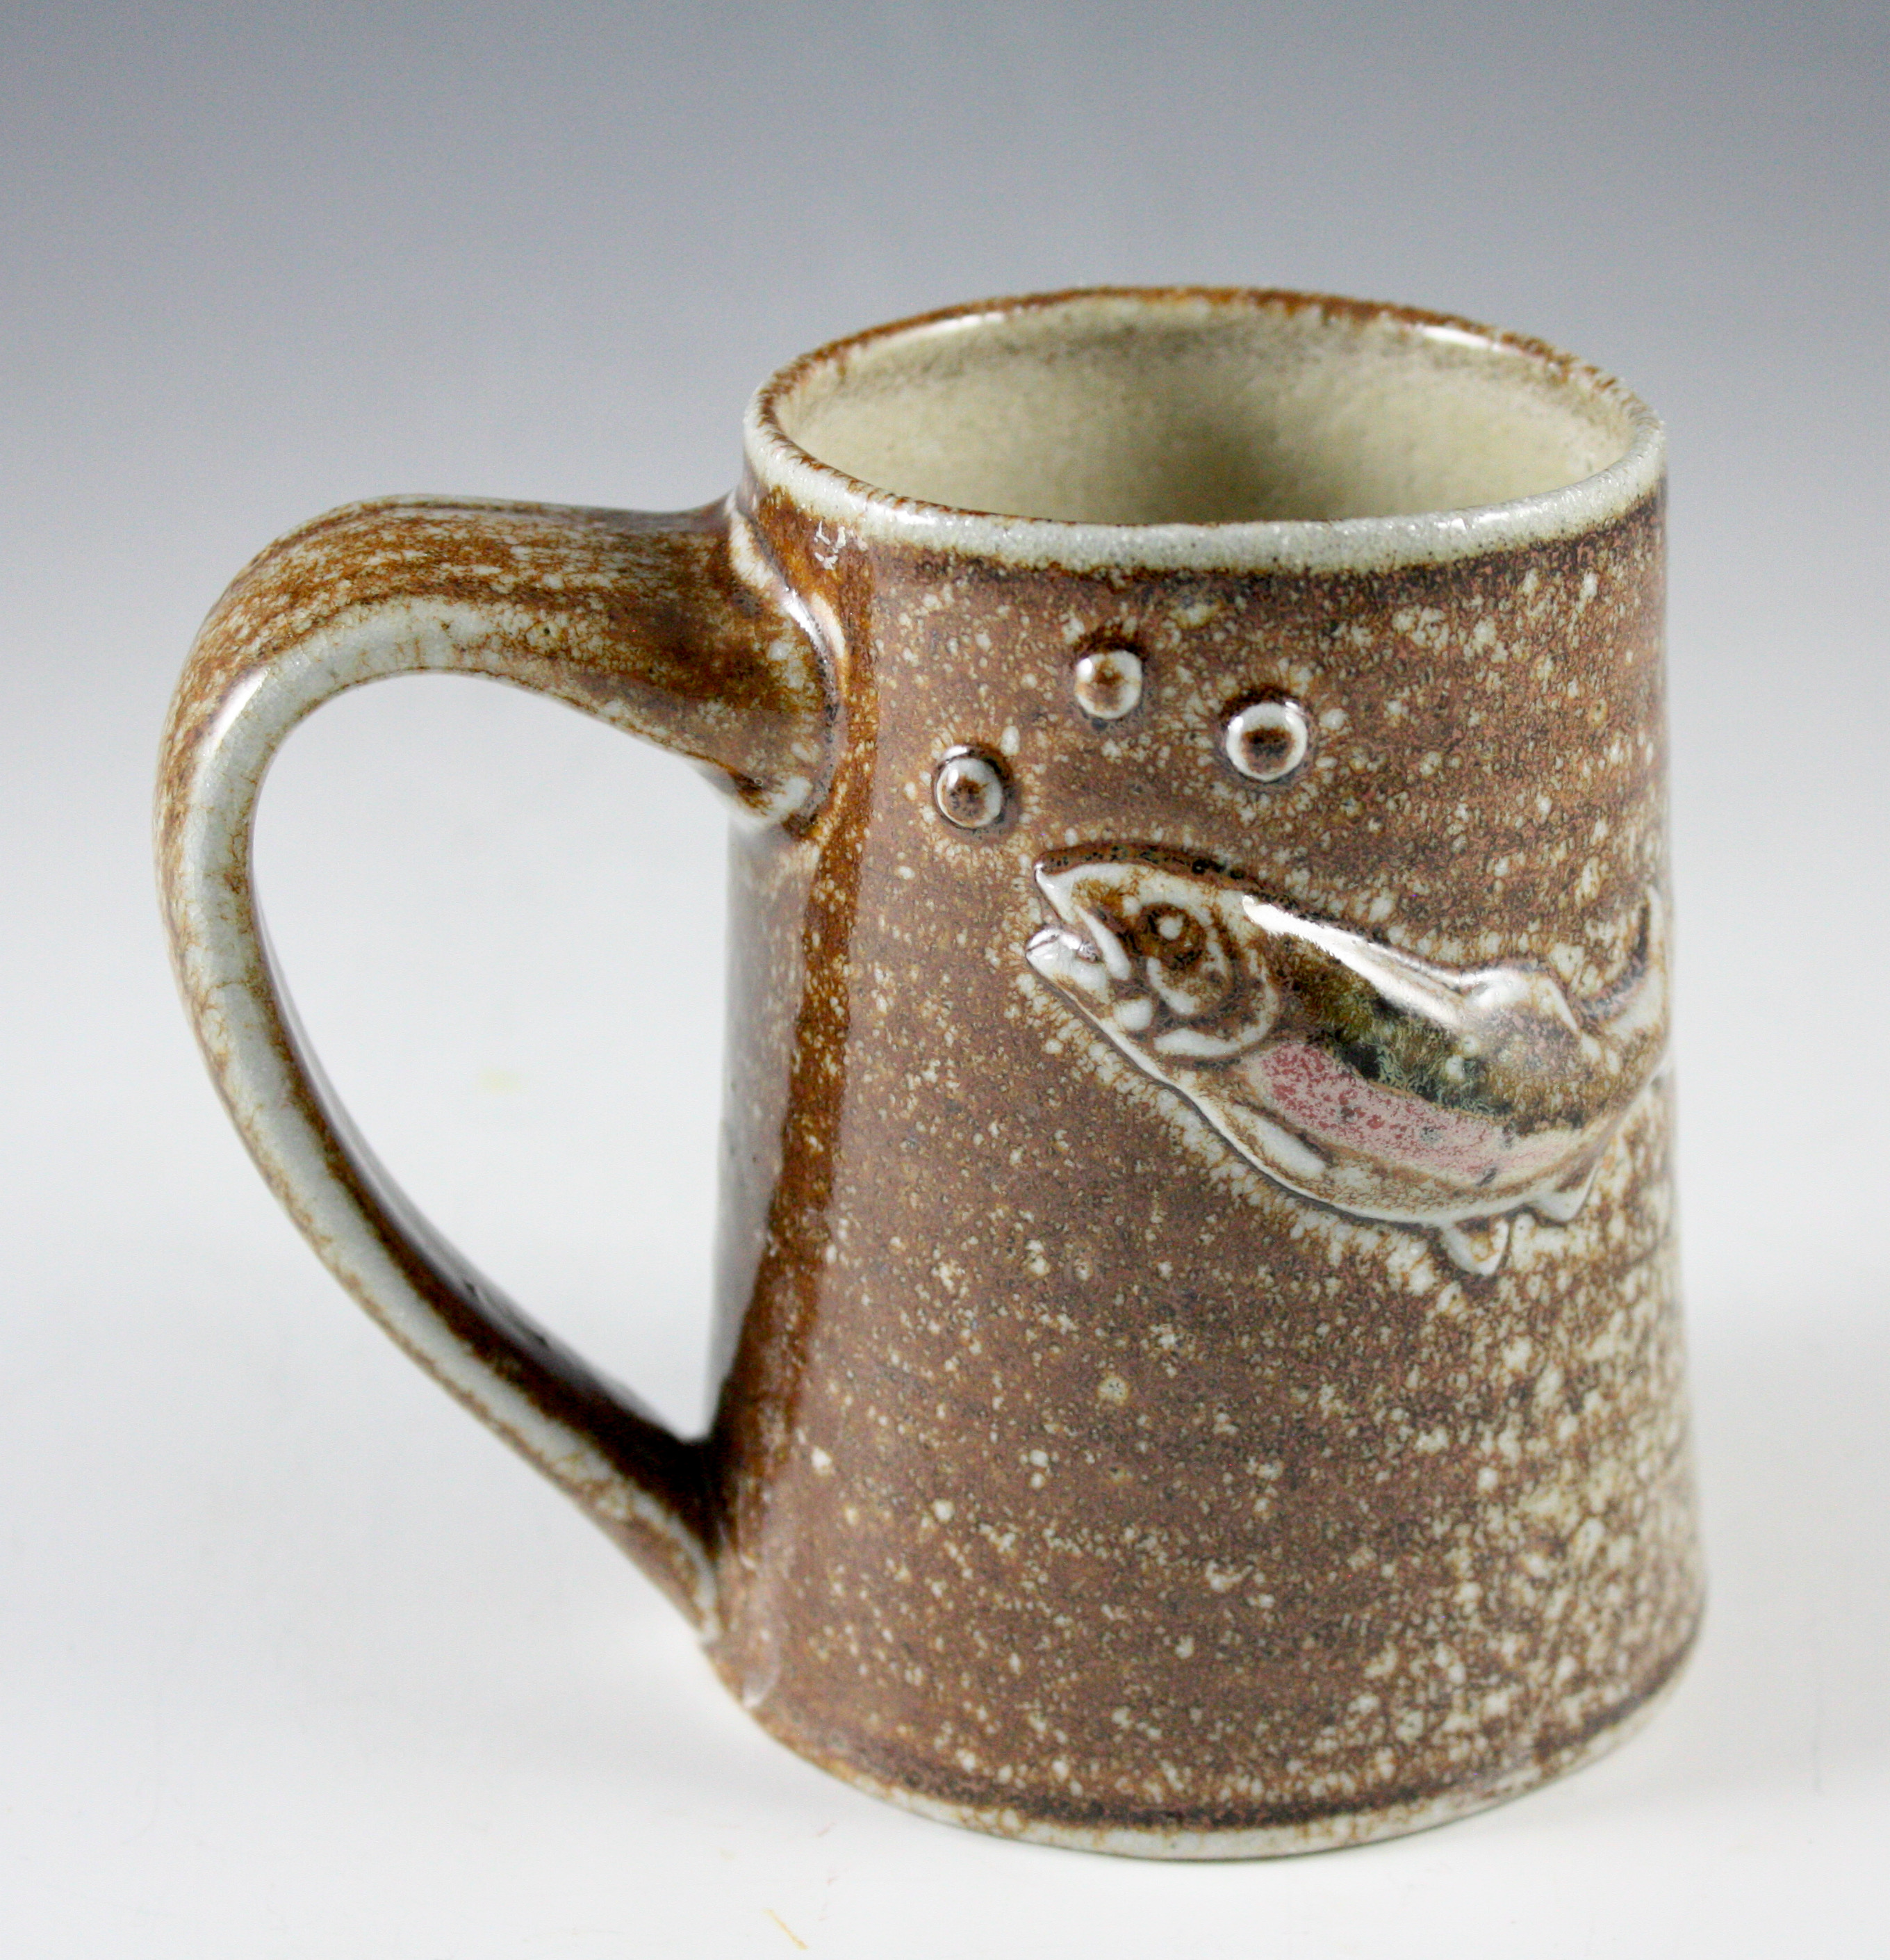 Trout Mug 21-296